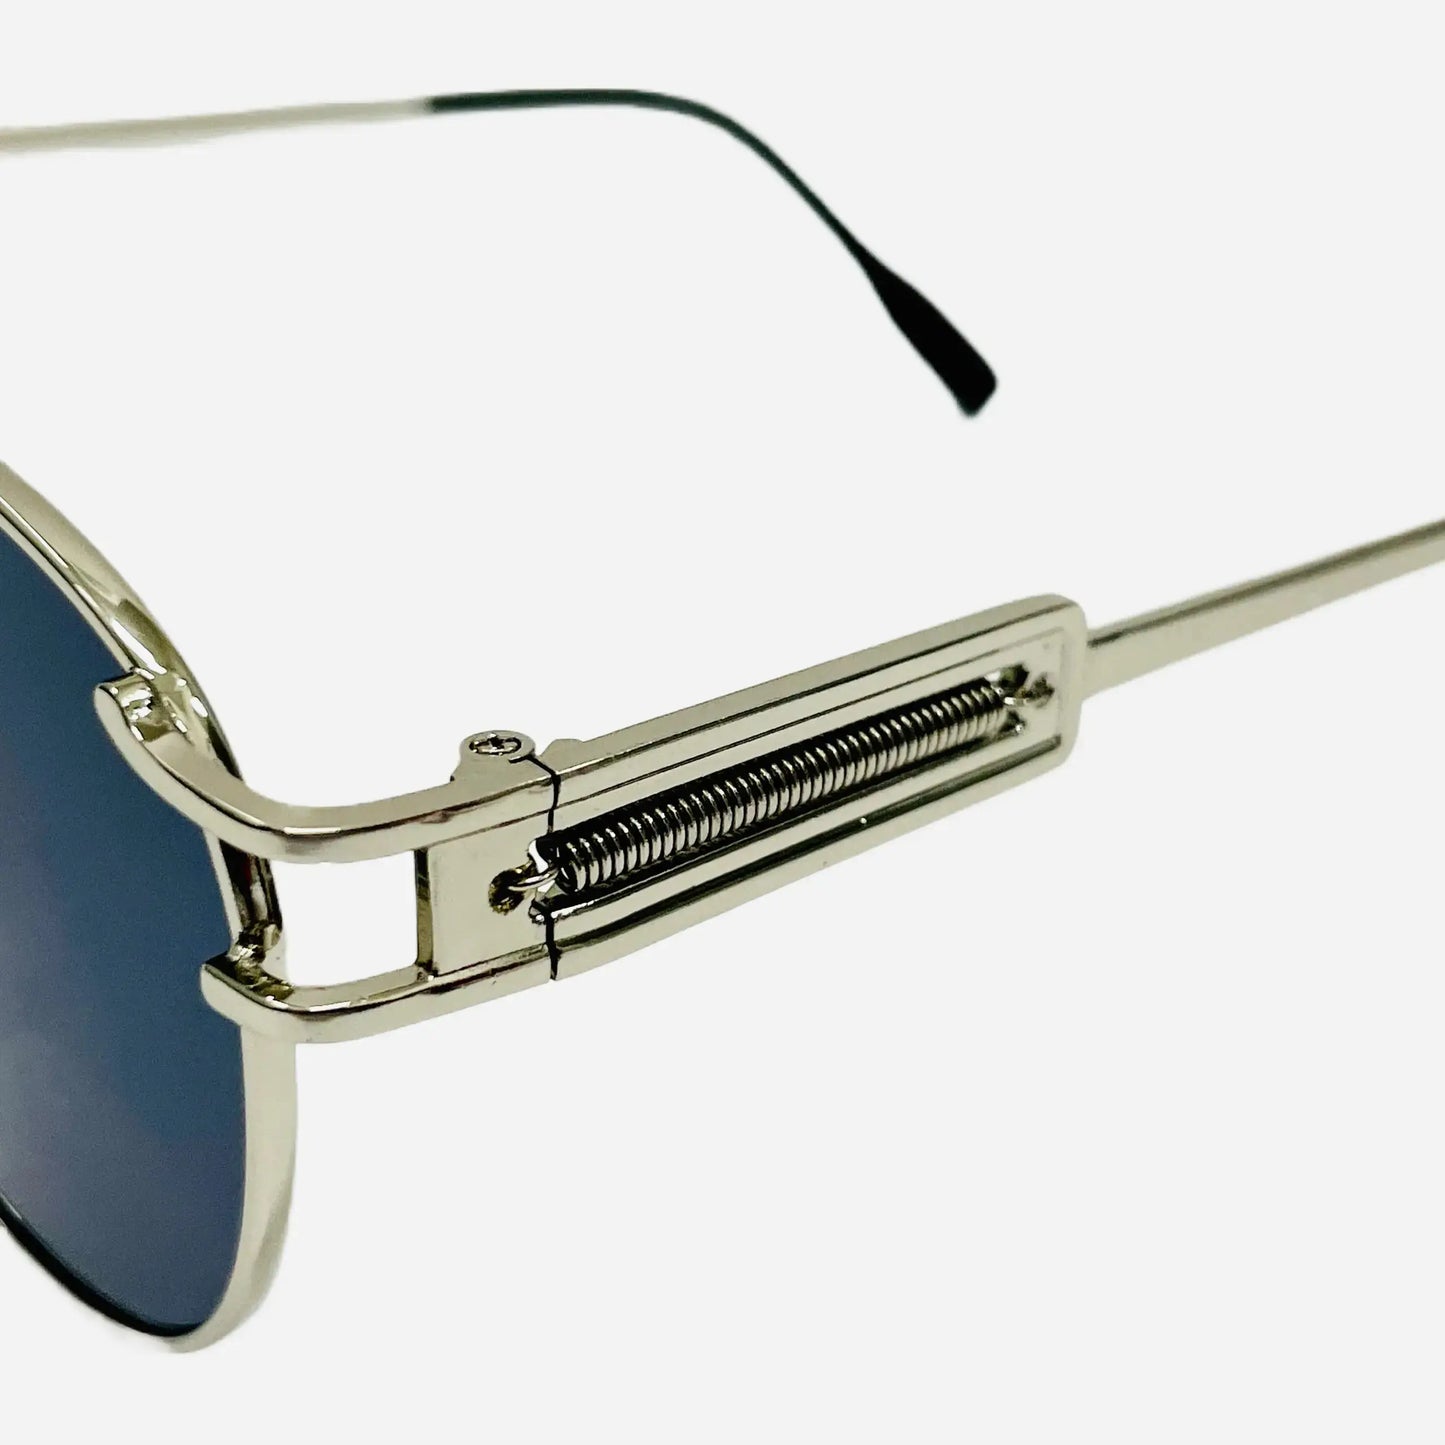 Vintage Jean Paul Gaultier Sonnenbrille Sunglasses Model 56-5107-silver-detail-2